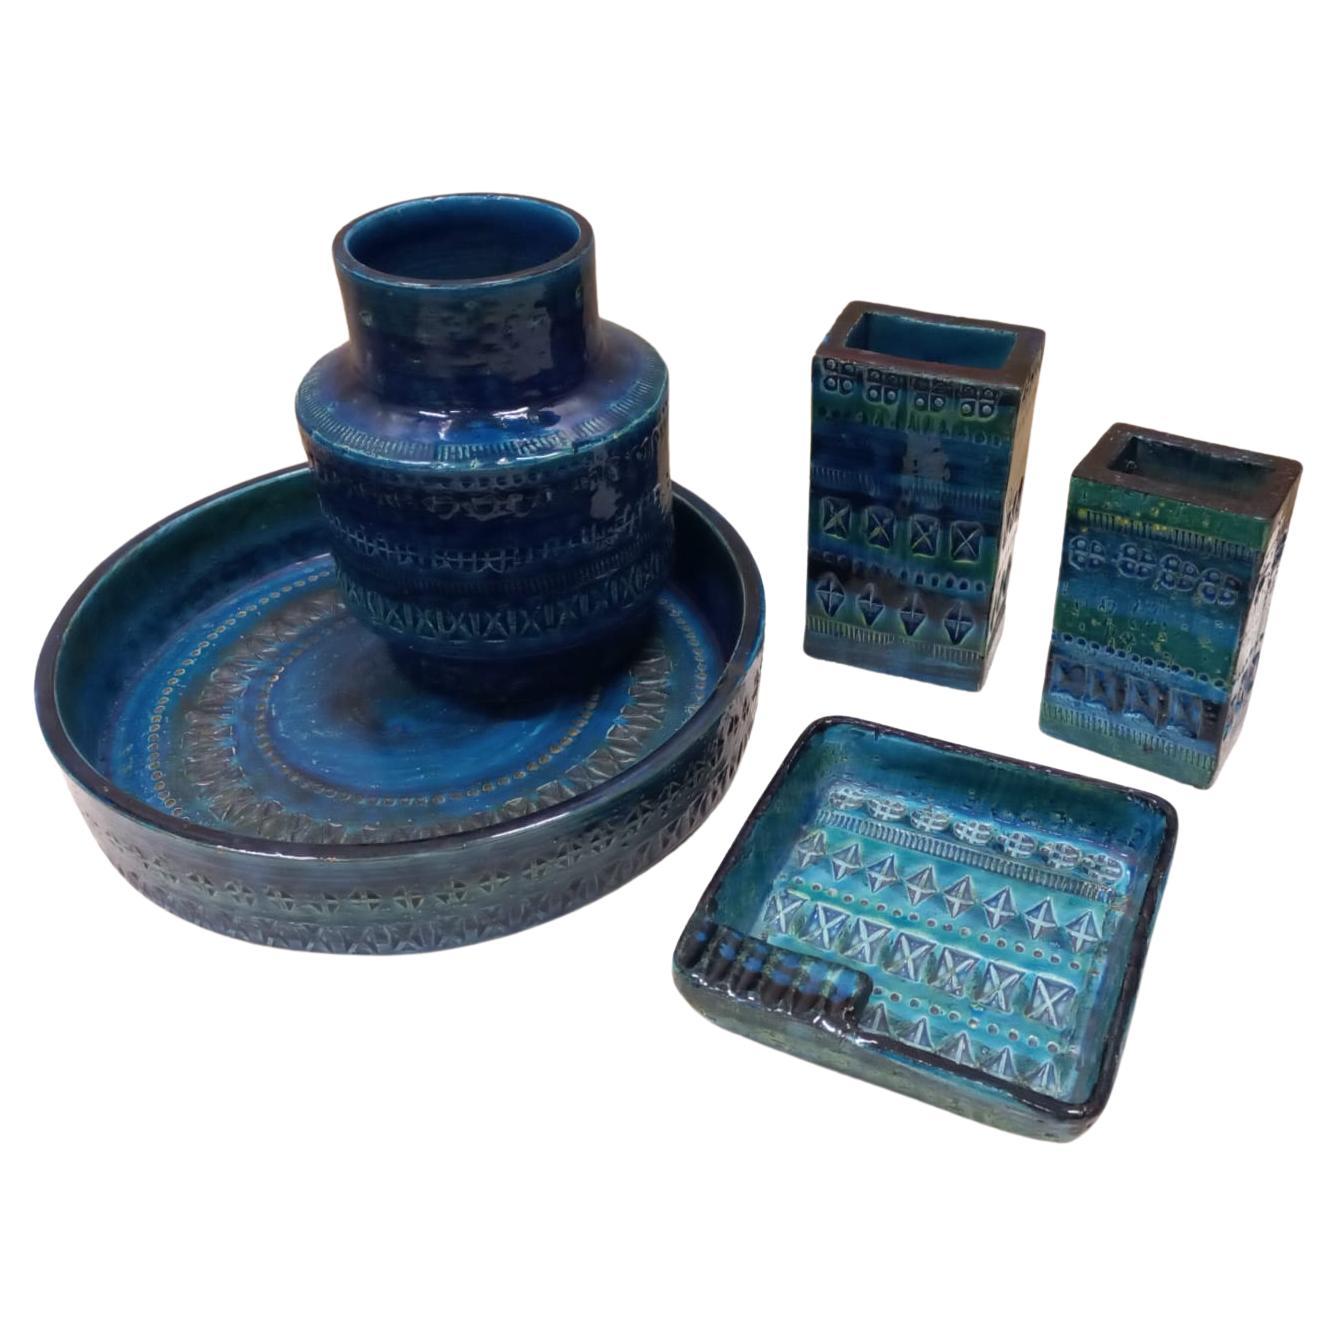 Ensemble de cramique circulaire Aldo Londi, maille bleue, Bitossi, milieu du XXe sicle